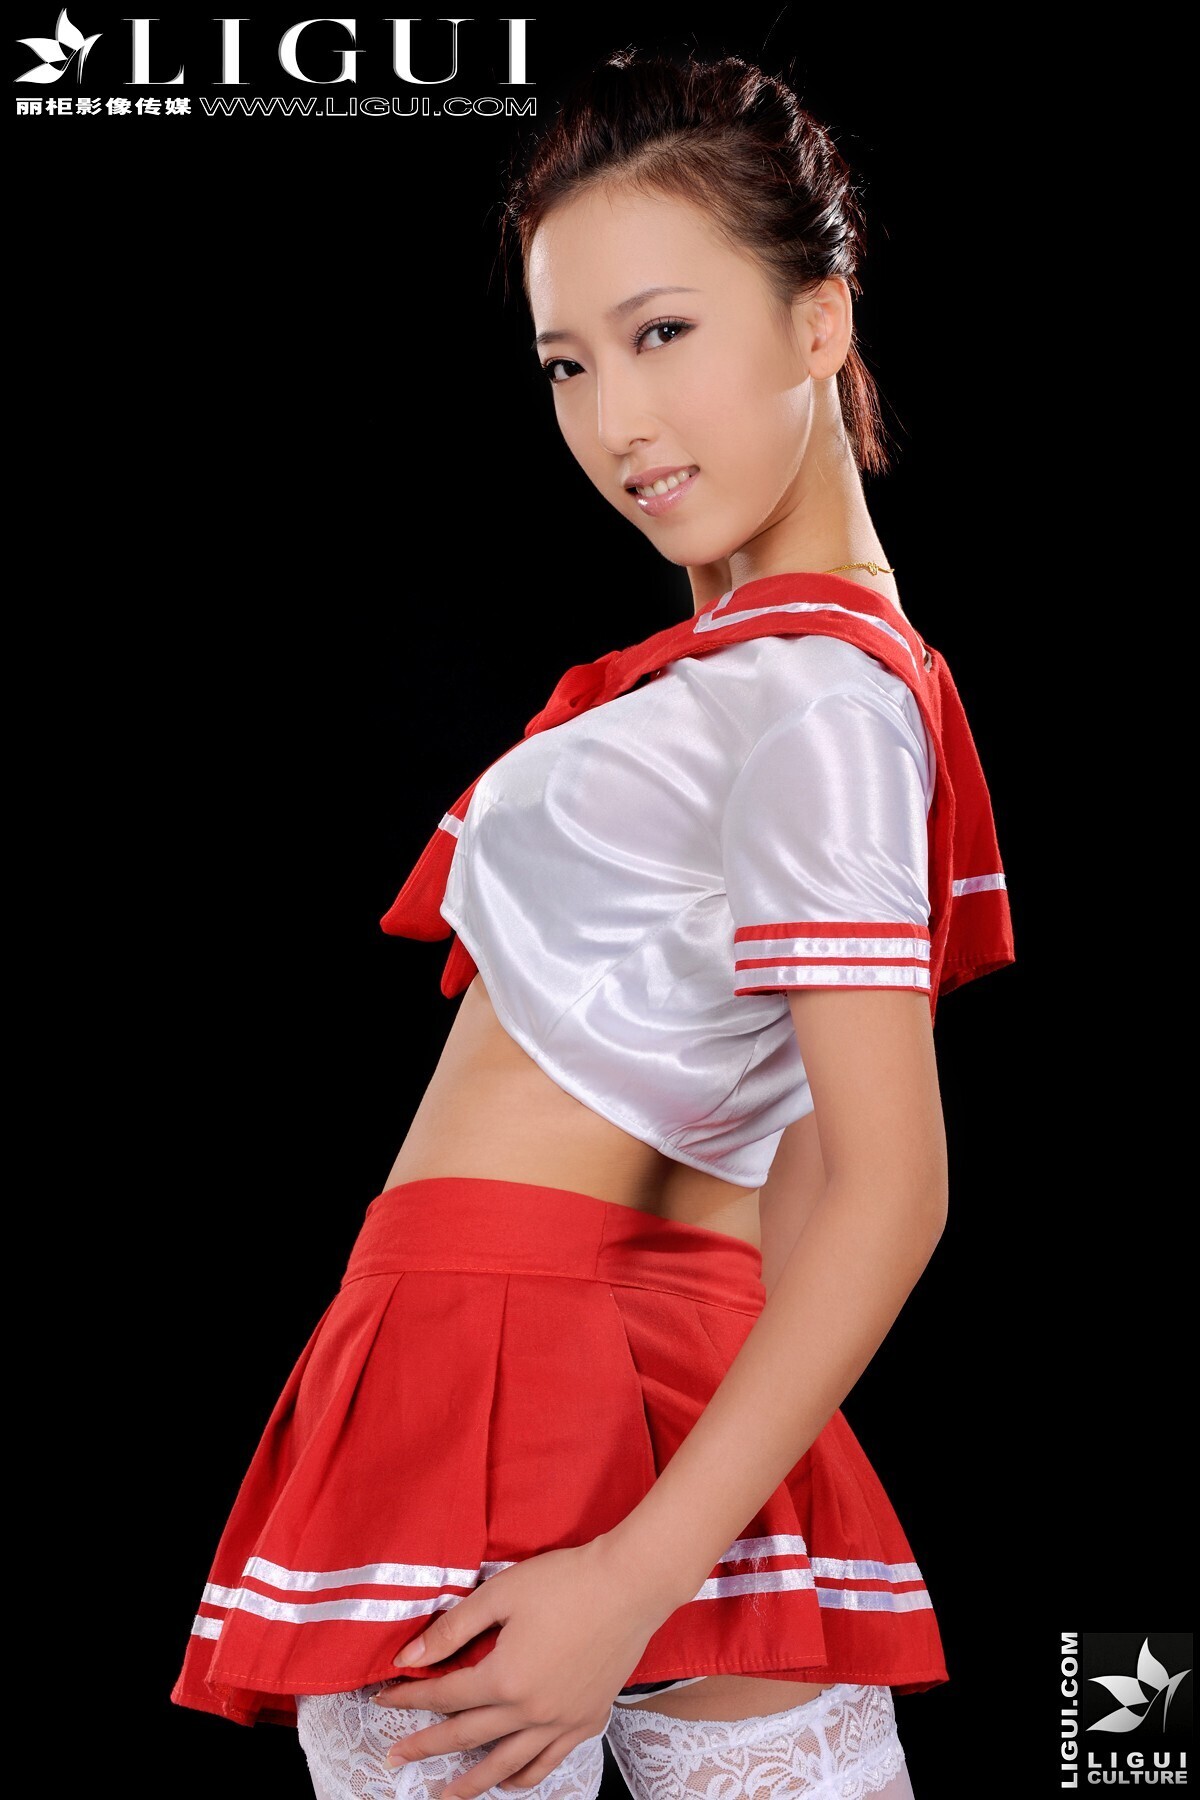 Pure student sister Meimei on model Meimei [Li cabinet] 20111122